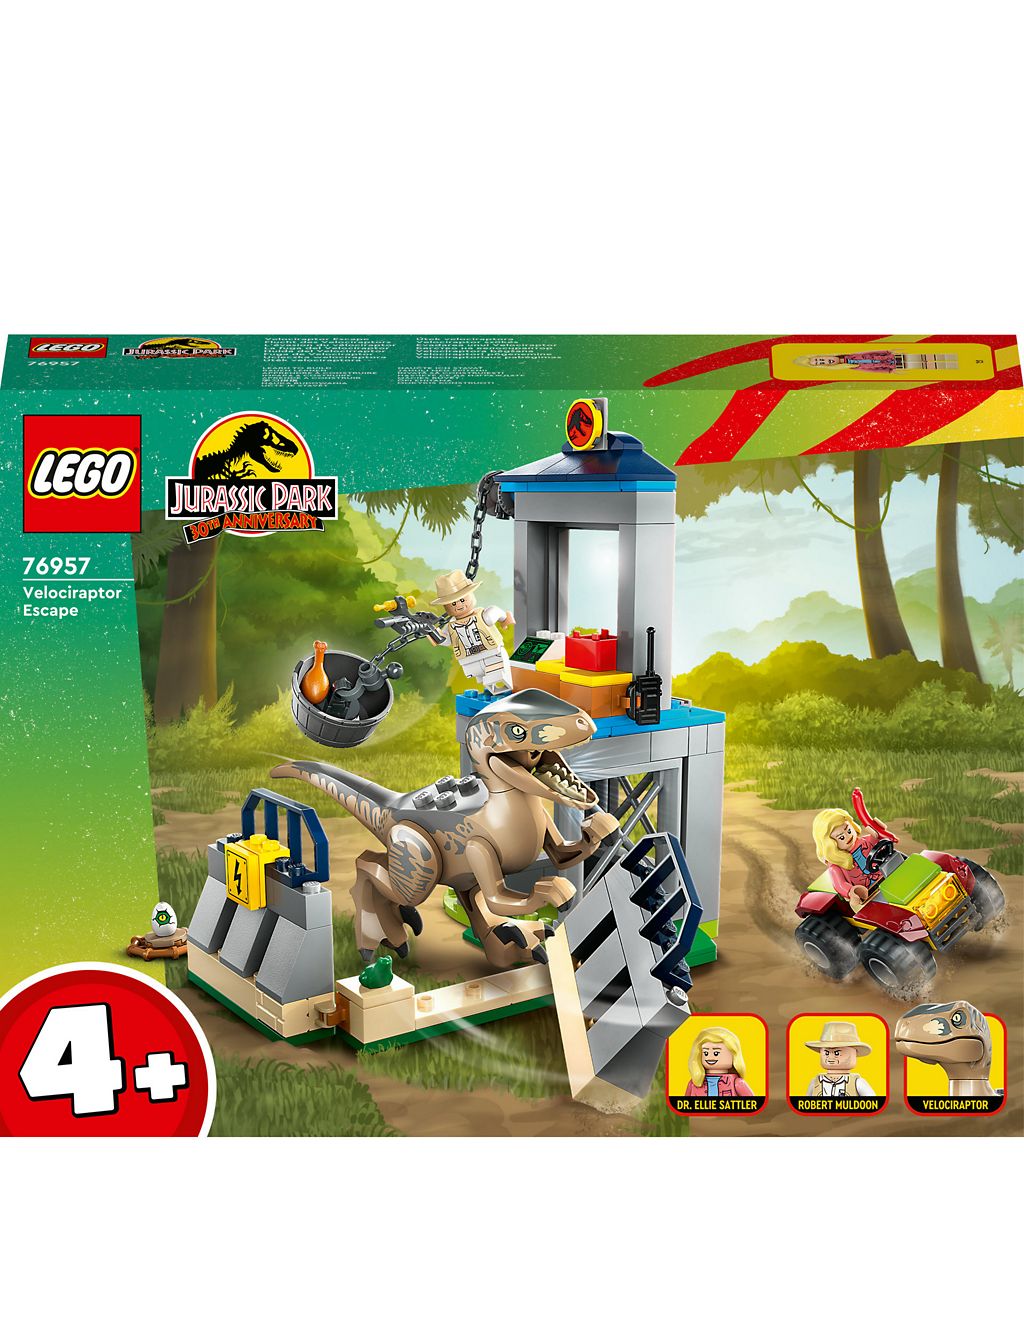 LEGO Jurassic Park Velociraptor Escape Toy Set 
76957 (4+ Yrs) 2 of 6